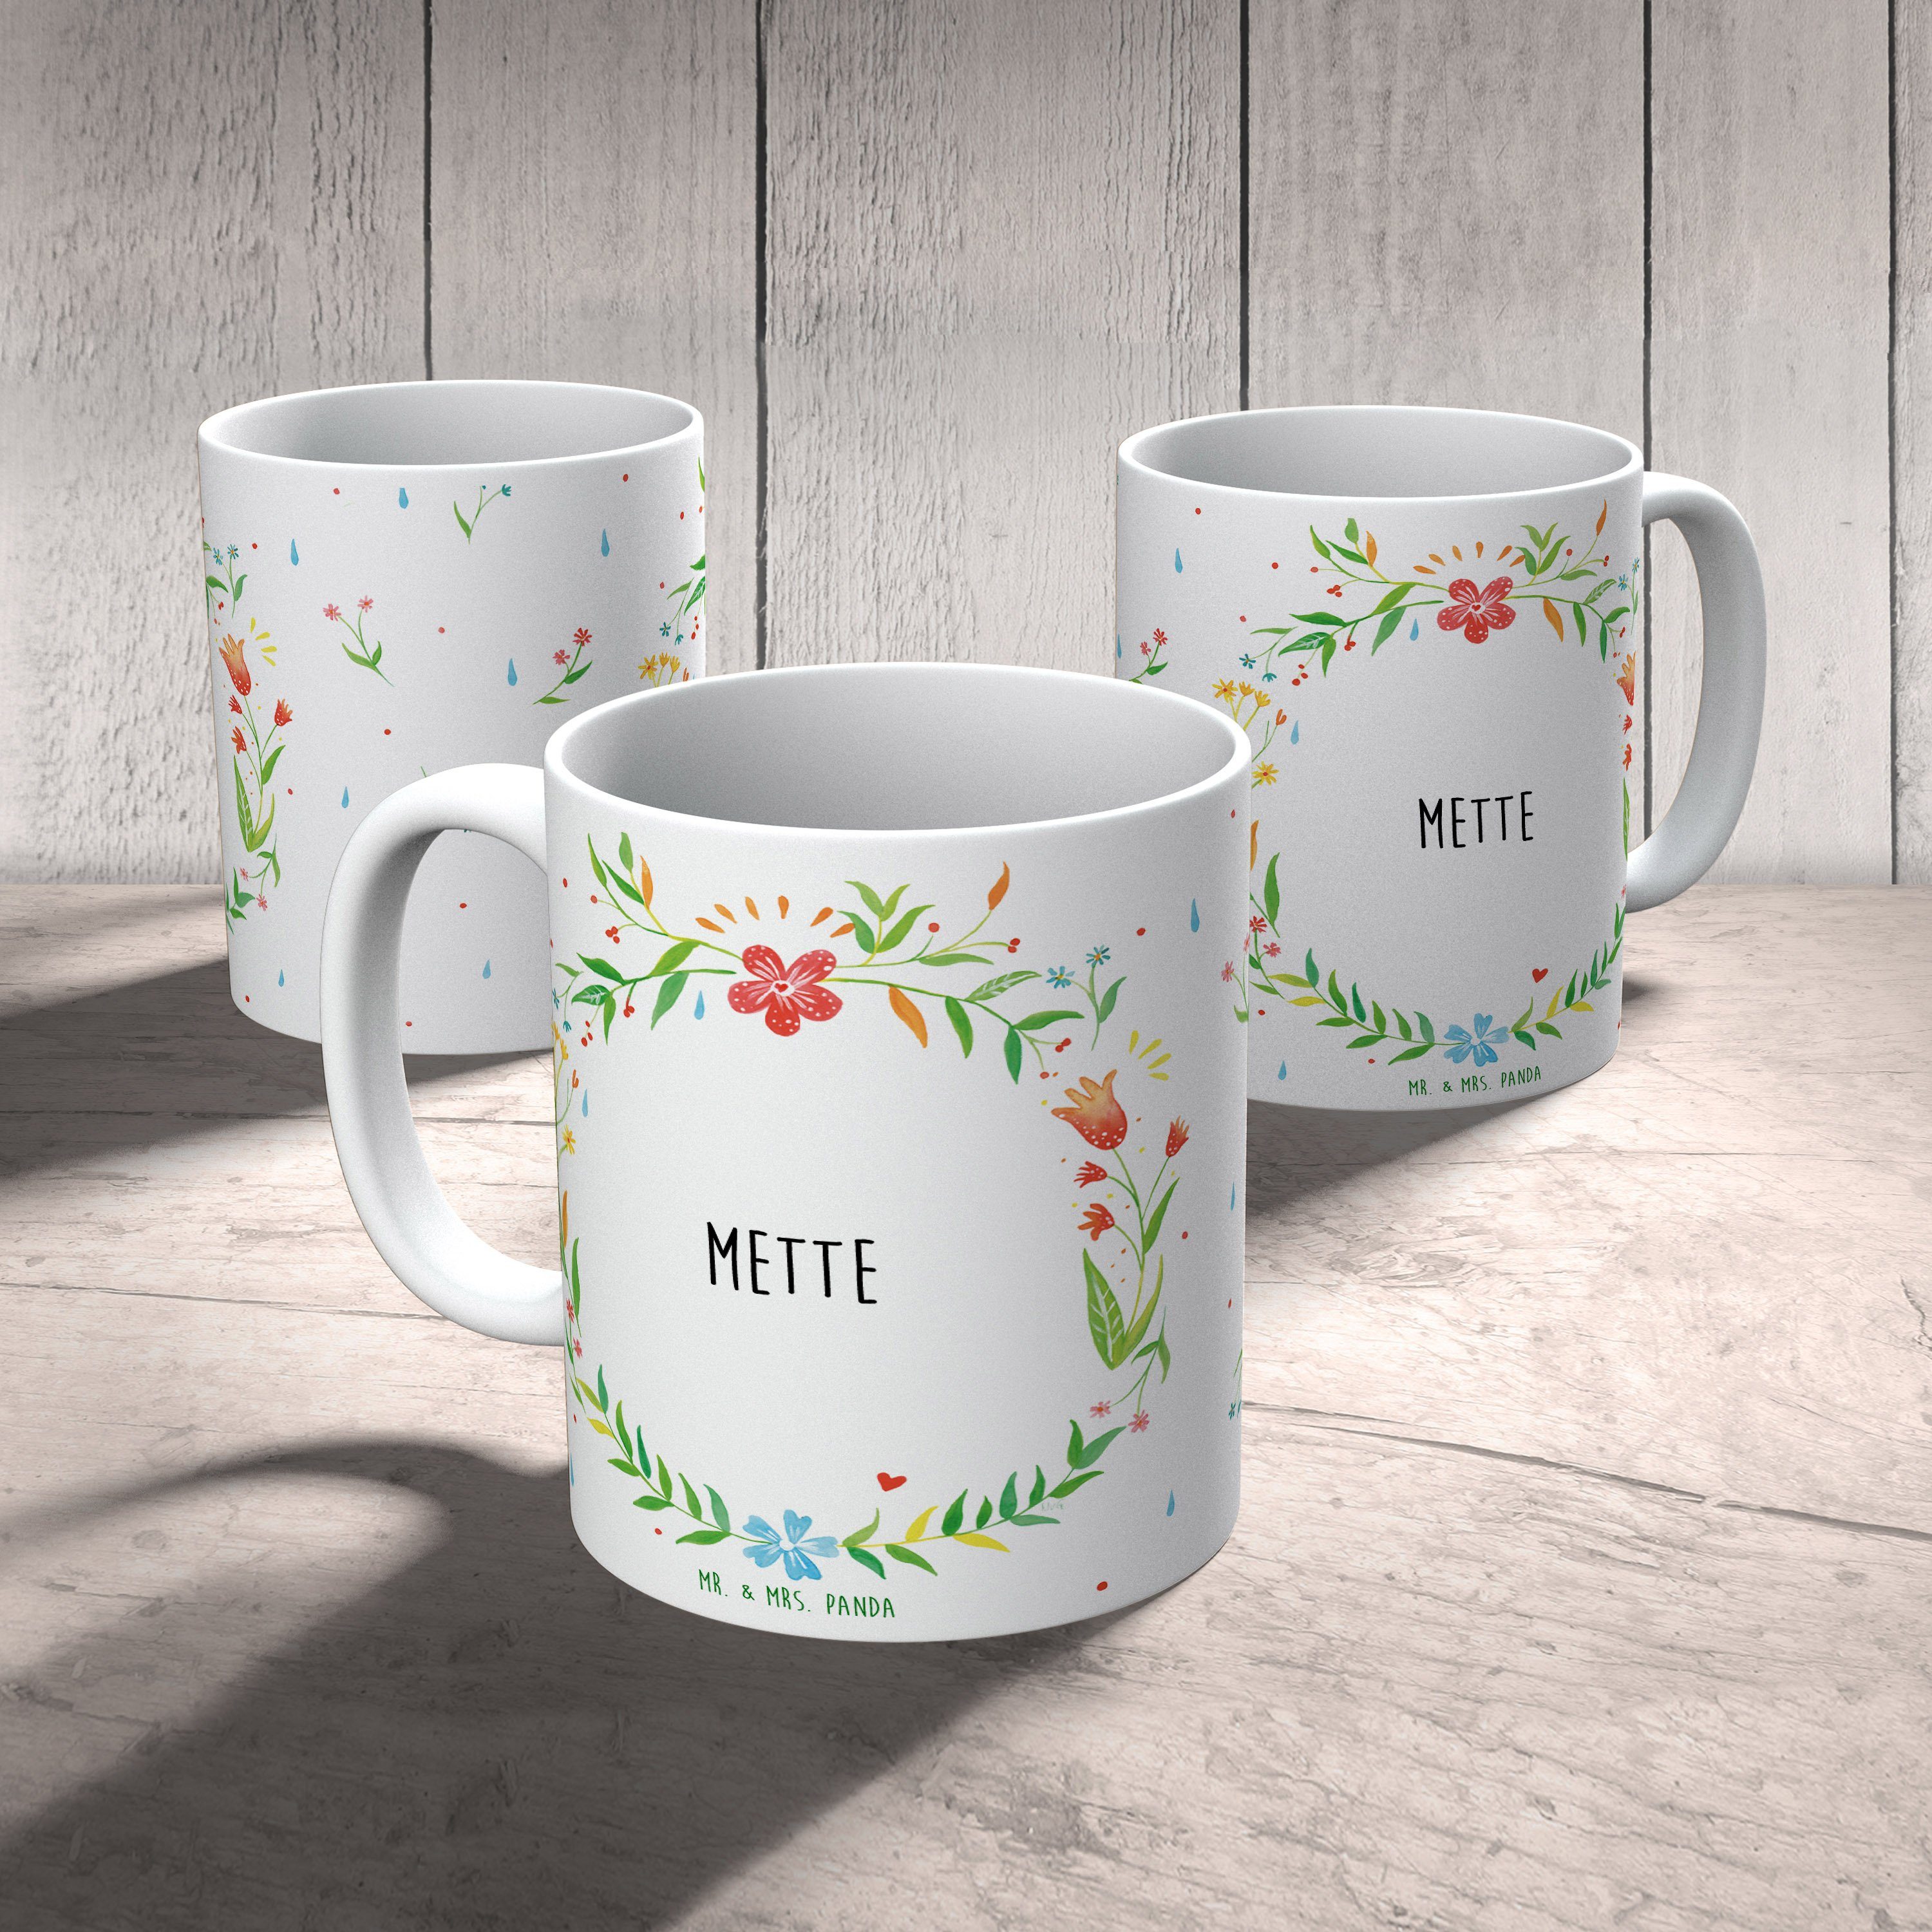 Mrs. & Kaffeetasse, Tasse Tasse, - Sprüc, Teebecher, Keramik Tasse Geschenk Mette Geschenk, Panda Mr.